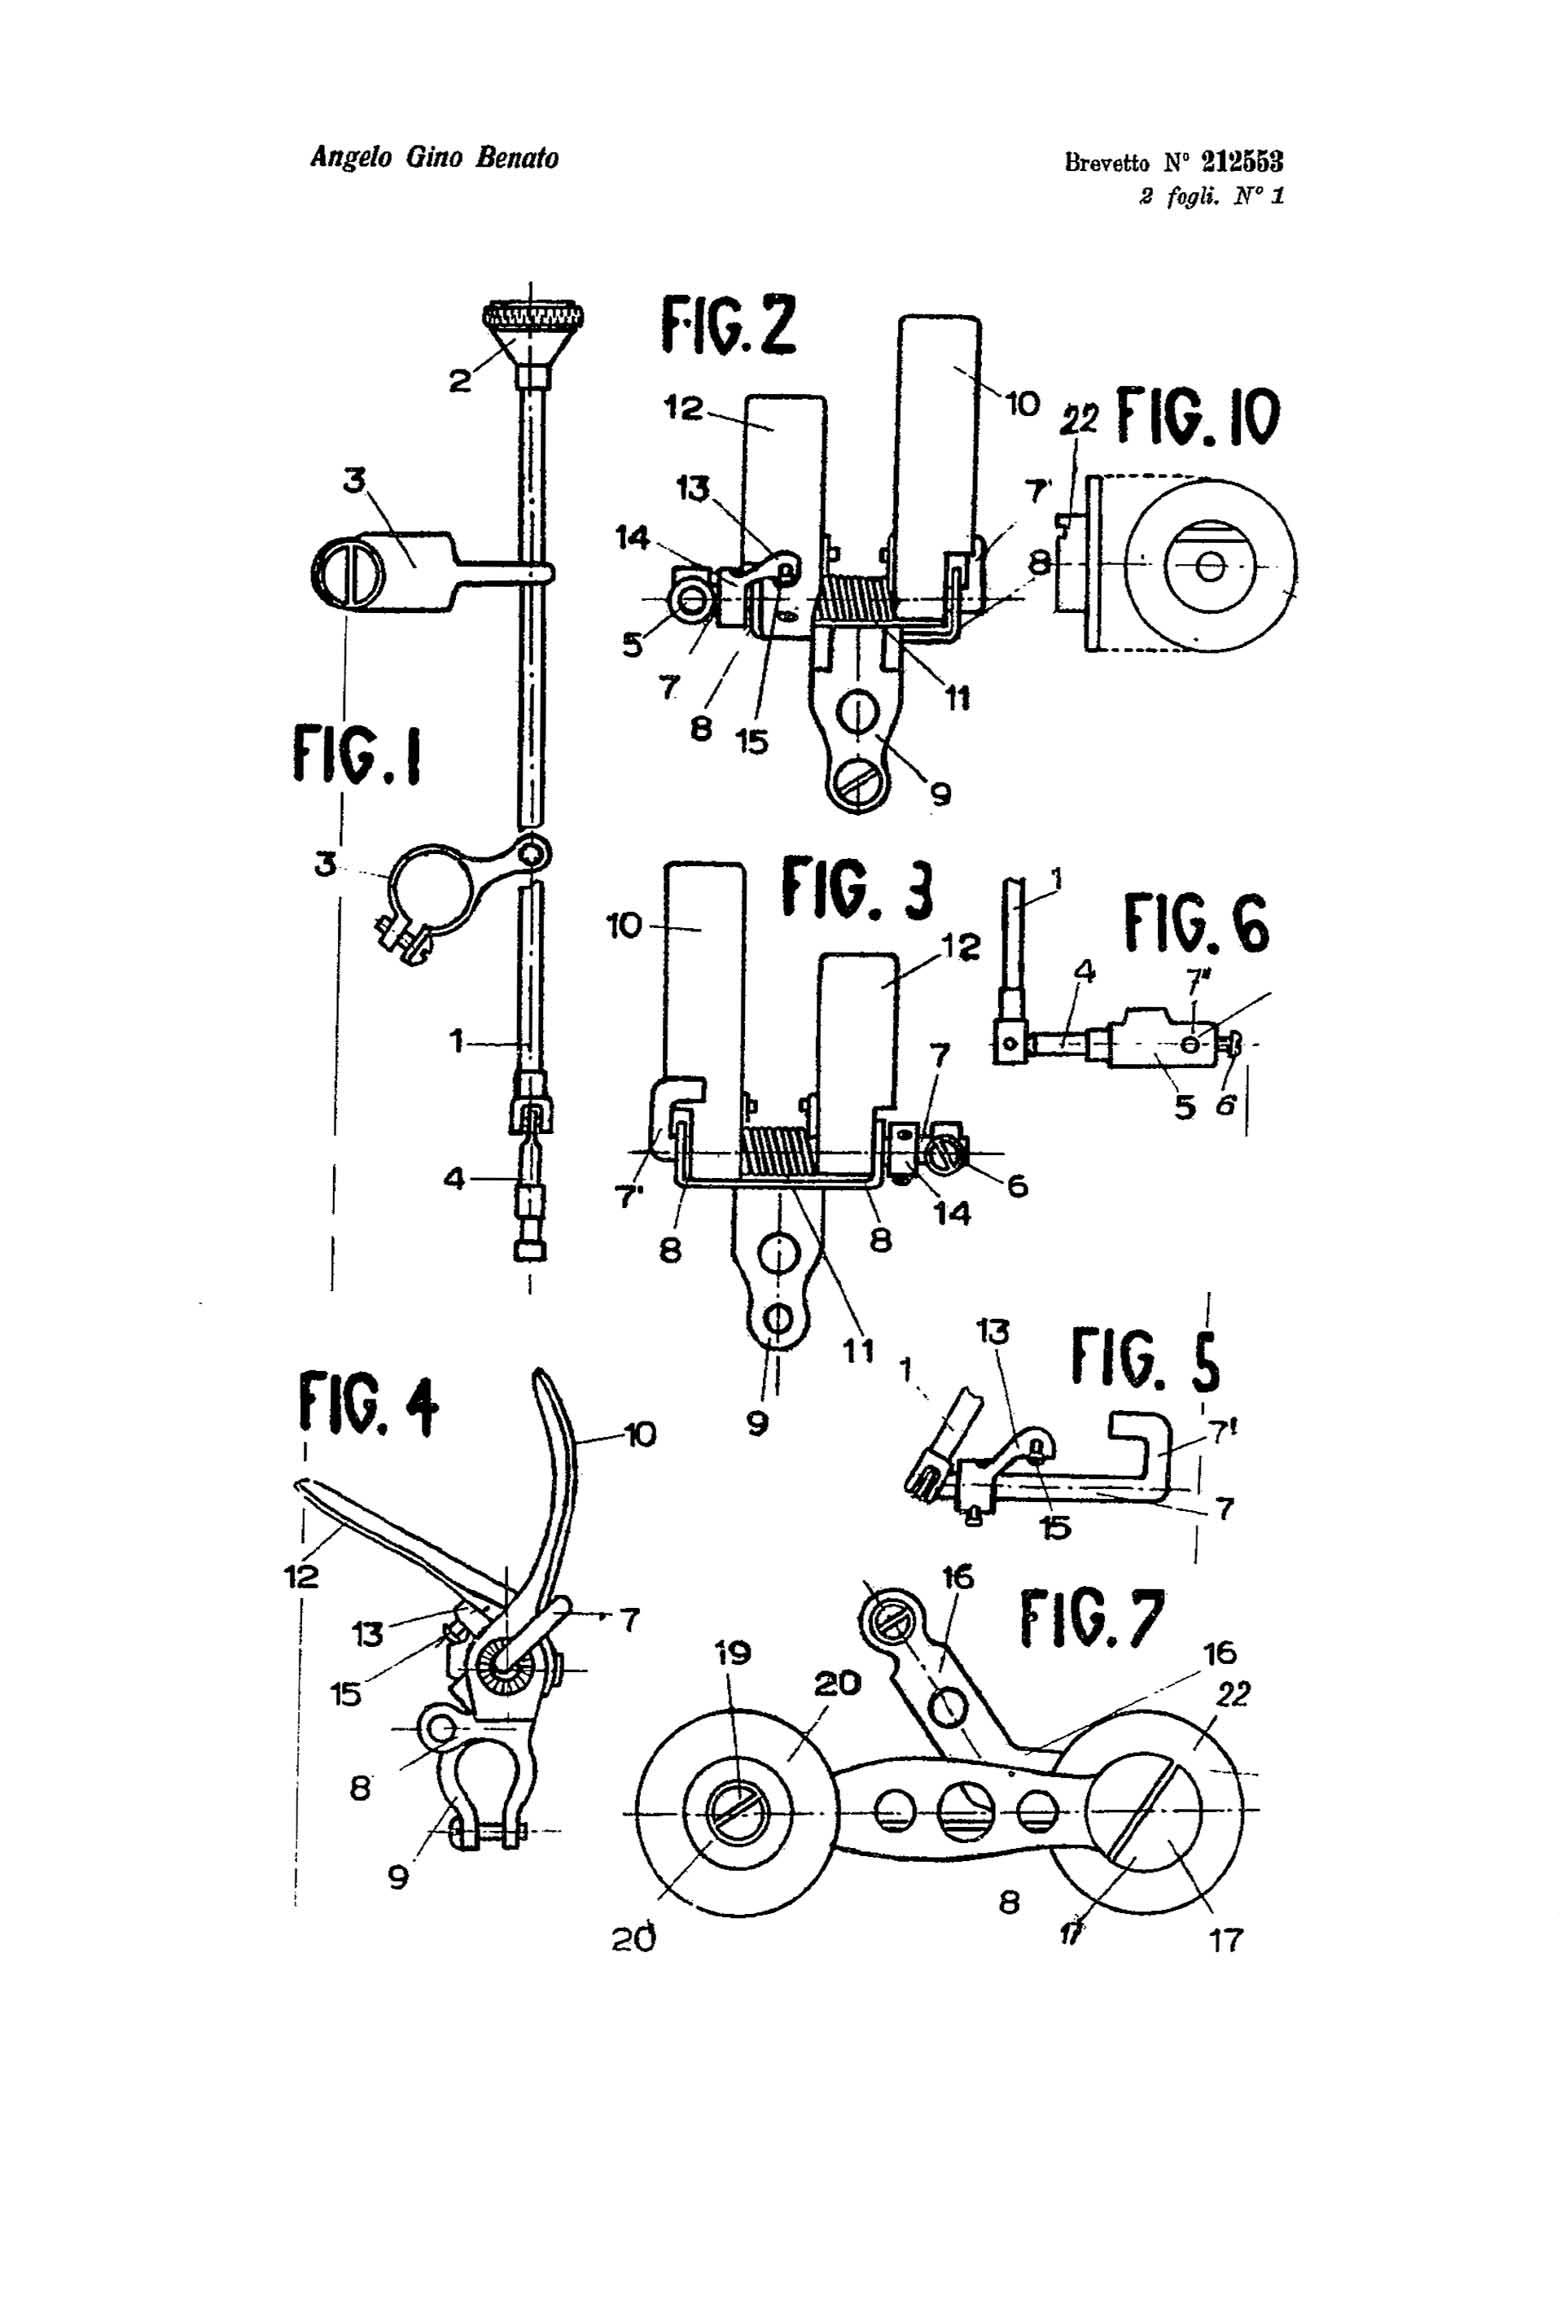 Swiss Patent 212,553 - Benato scan 04 main image